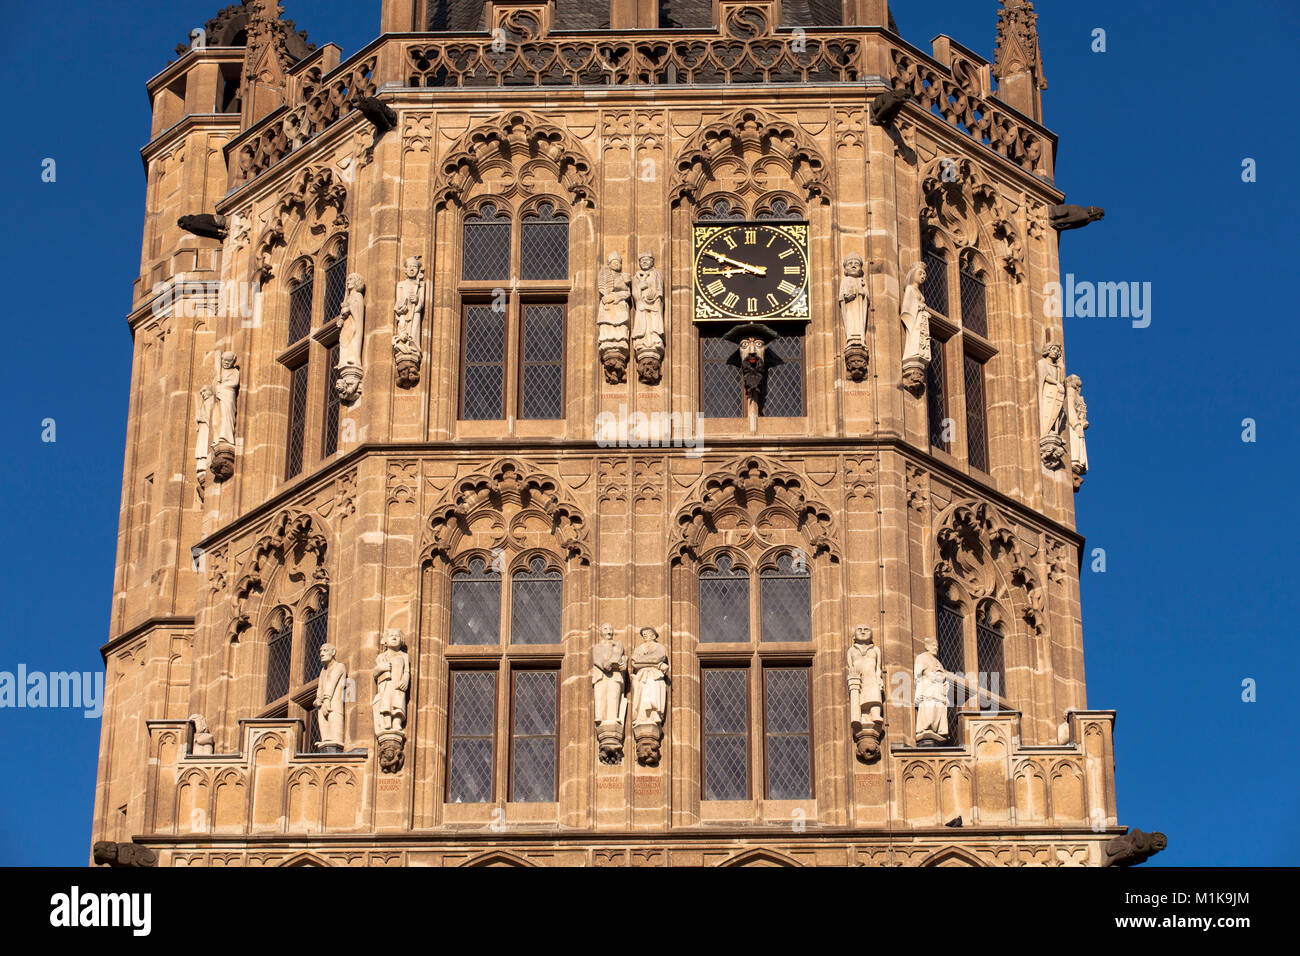 Deutschland, Köln, der Turm der historischen Rathaus im alten Teil der Stadt, unter der Uhr sehen Sie die Platzjabbeck, ein Gesicht, dass o erstreckt sich Stockfoto